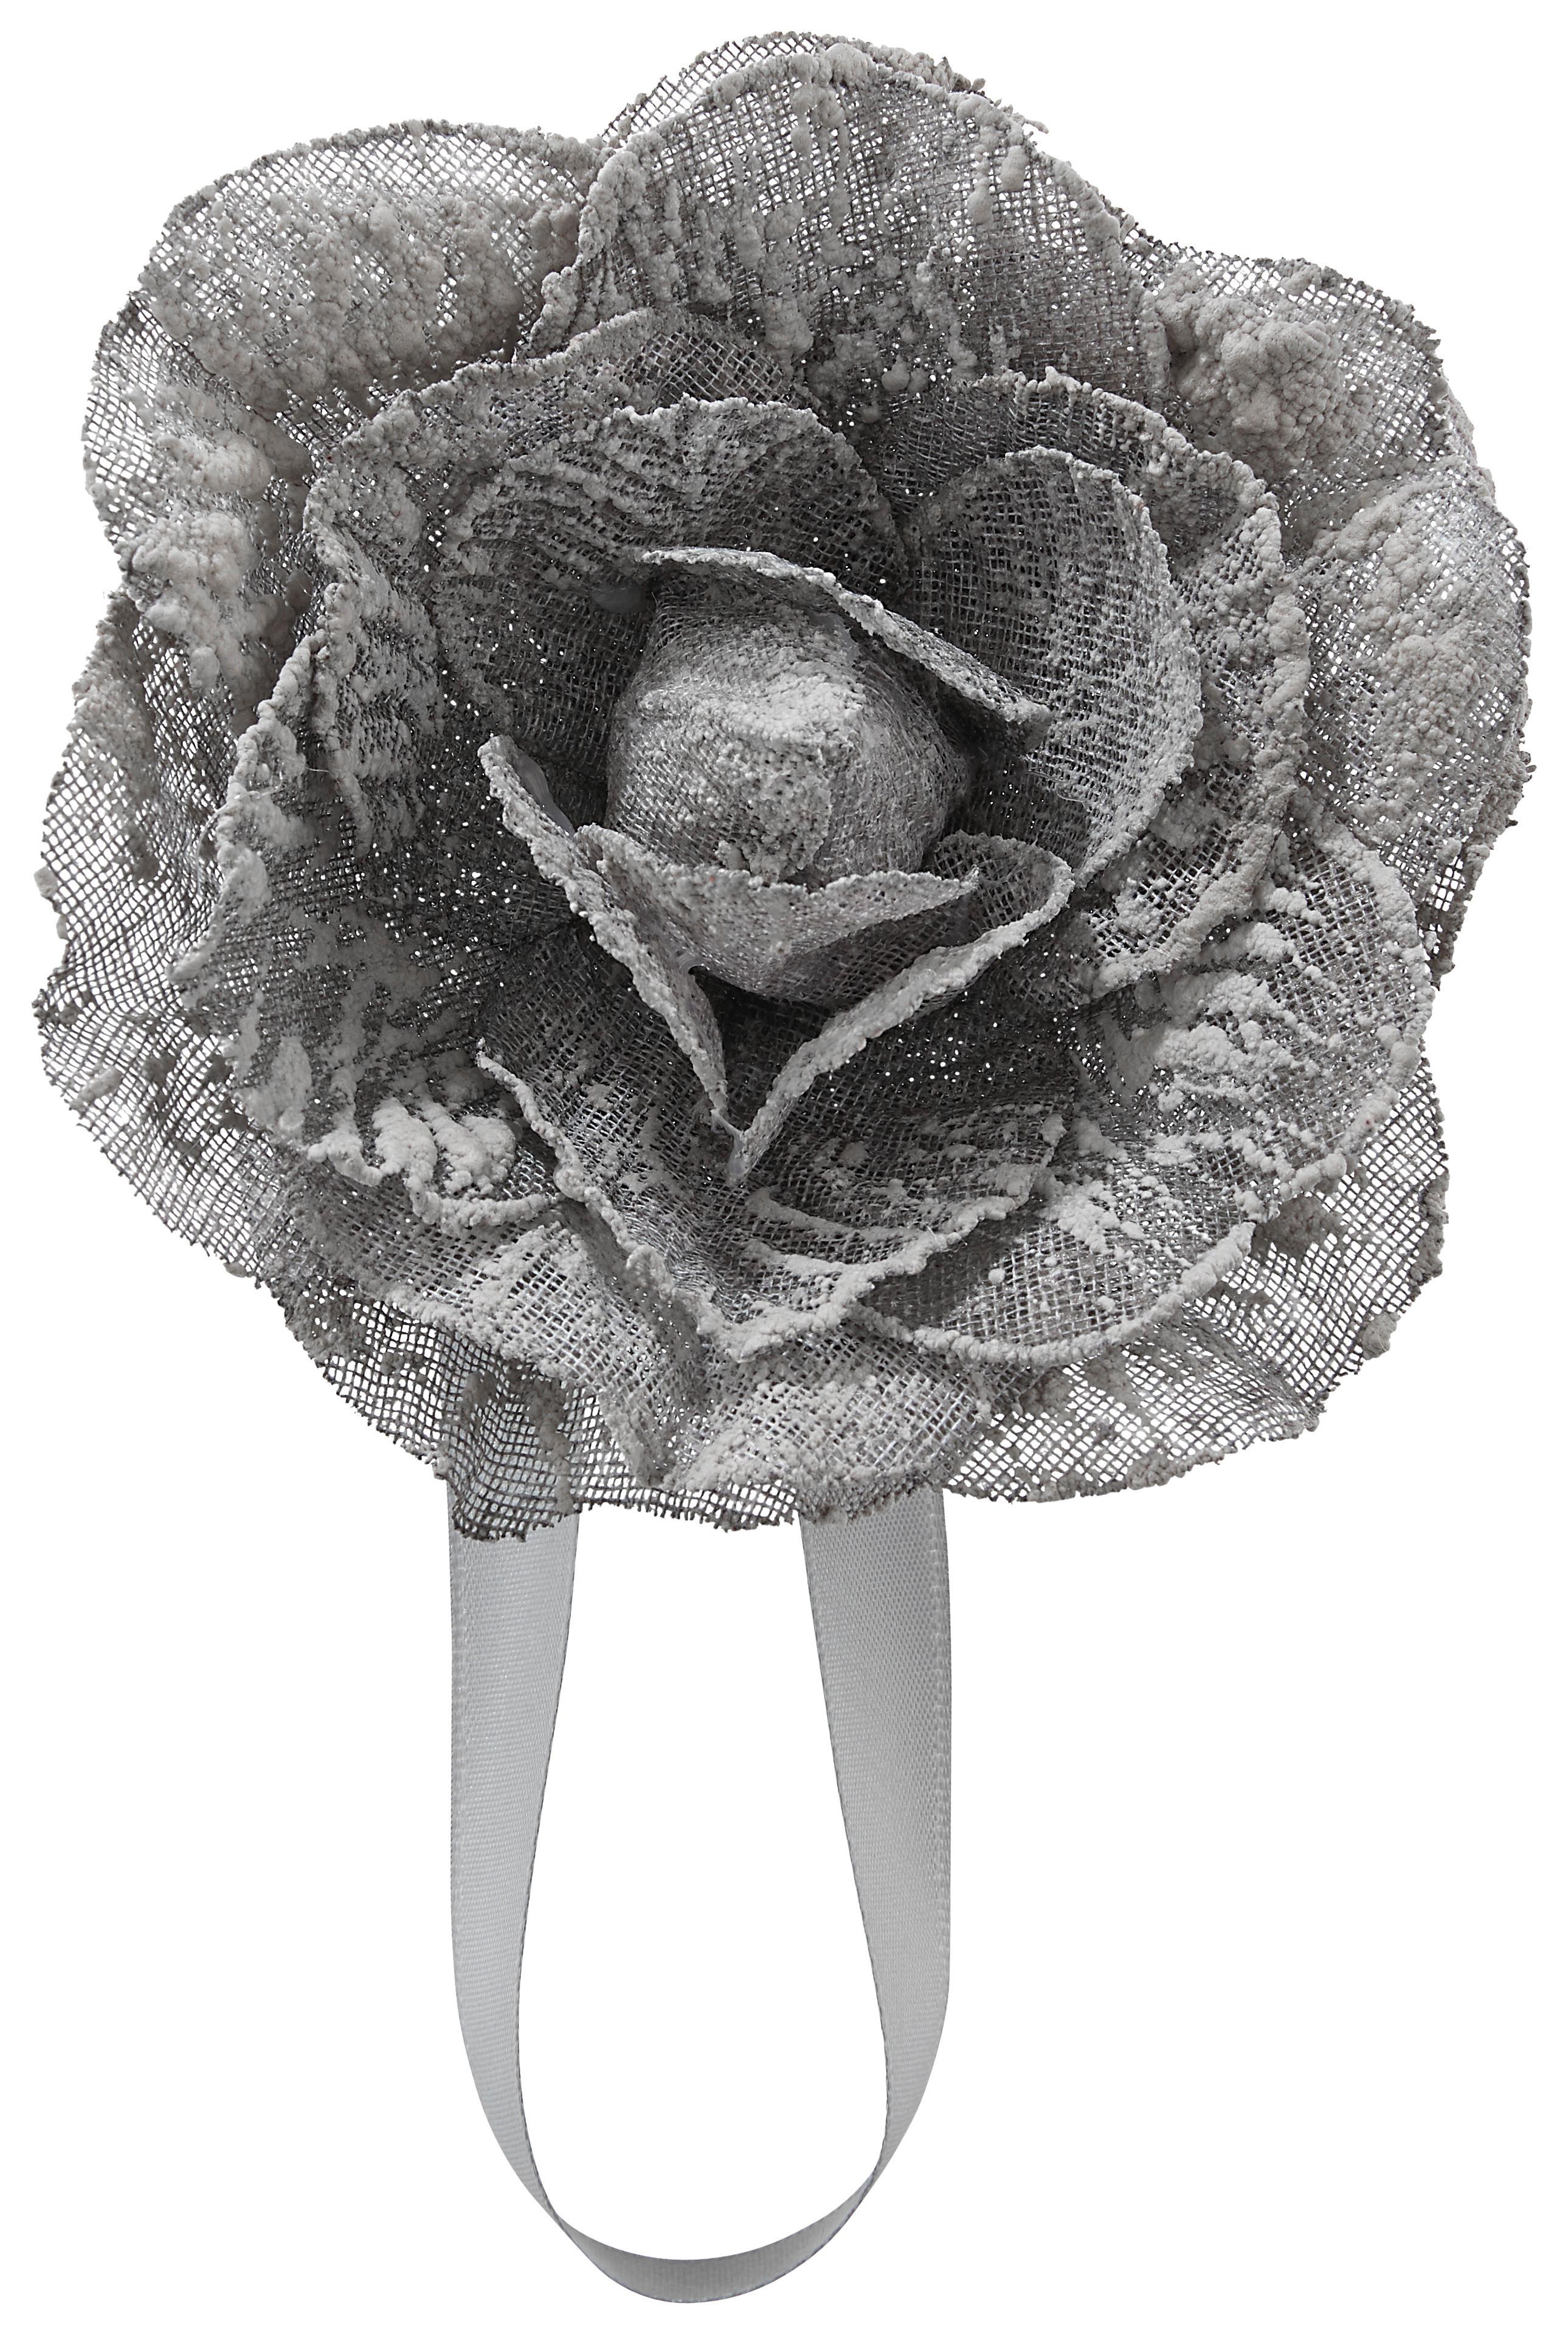 Úchytka Řasicí Rose - antracitová, Romantický / Rustikální, textil (11cm) - Modern Living